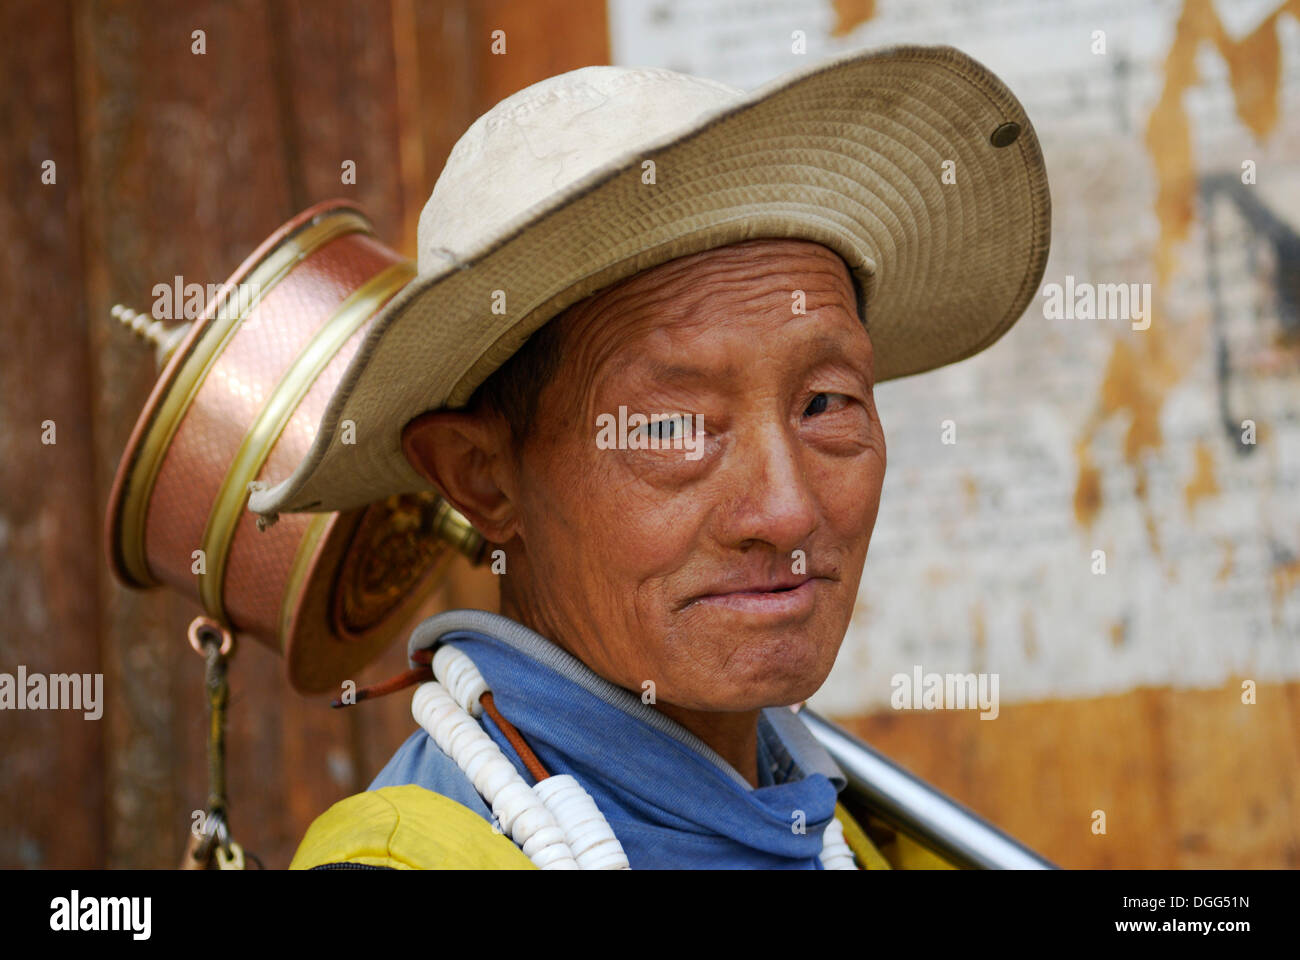 Tibetan pilgrim with a prayer wheel, portrait, main gate, Samye Monastery, Tibet, China, Asia Stock Photo